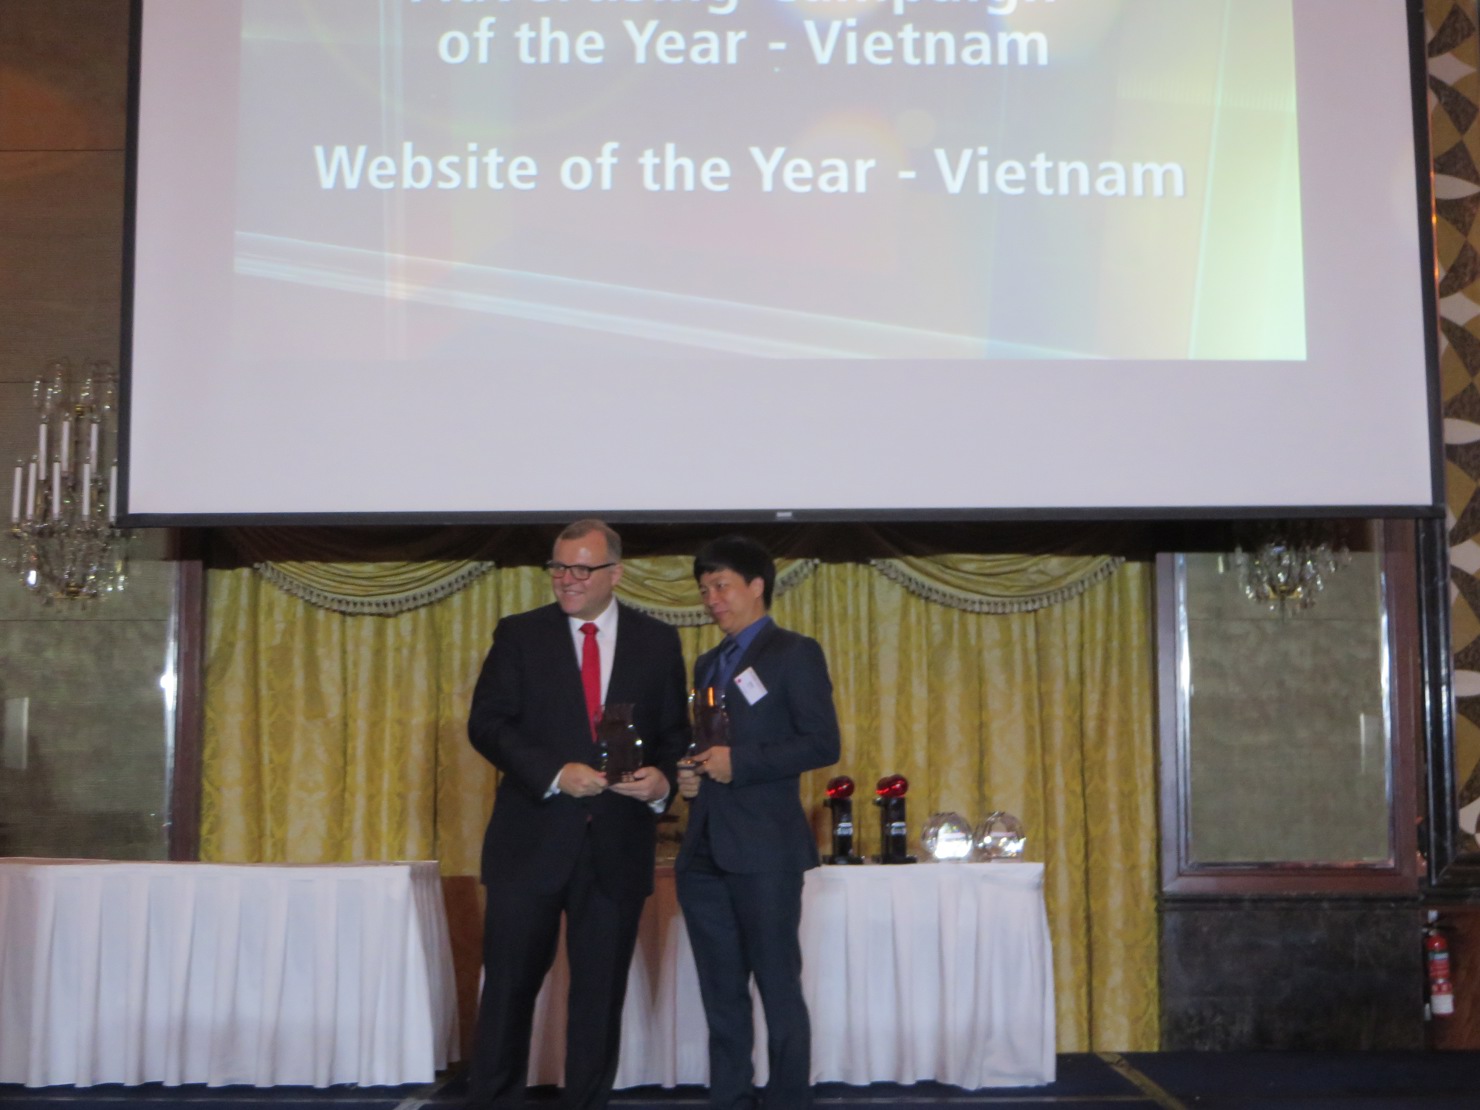 Phó Tổng giám đốc PVcomBank - ông Đoàn Đức Minh nhận giải thưởng từ Ban tổ chức.